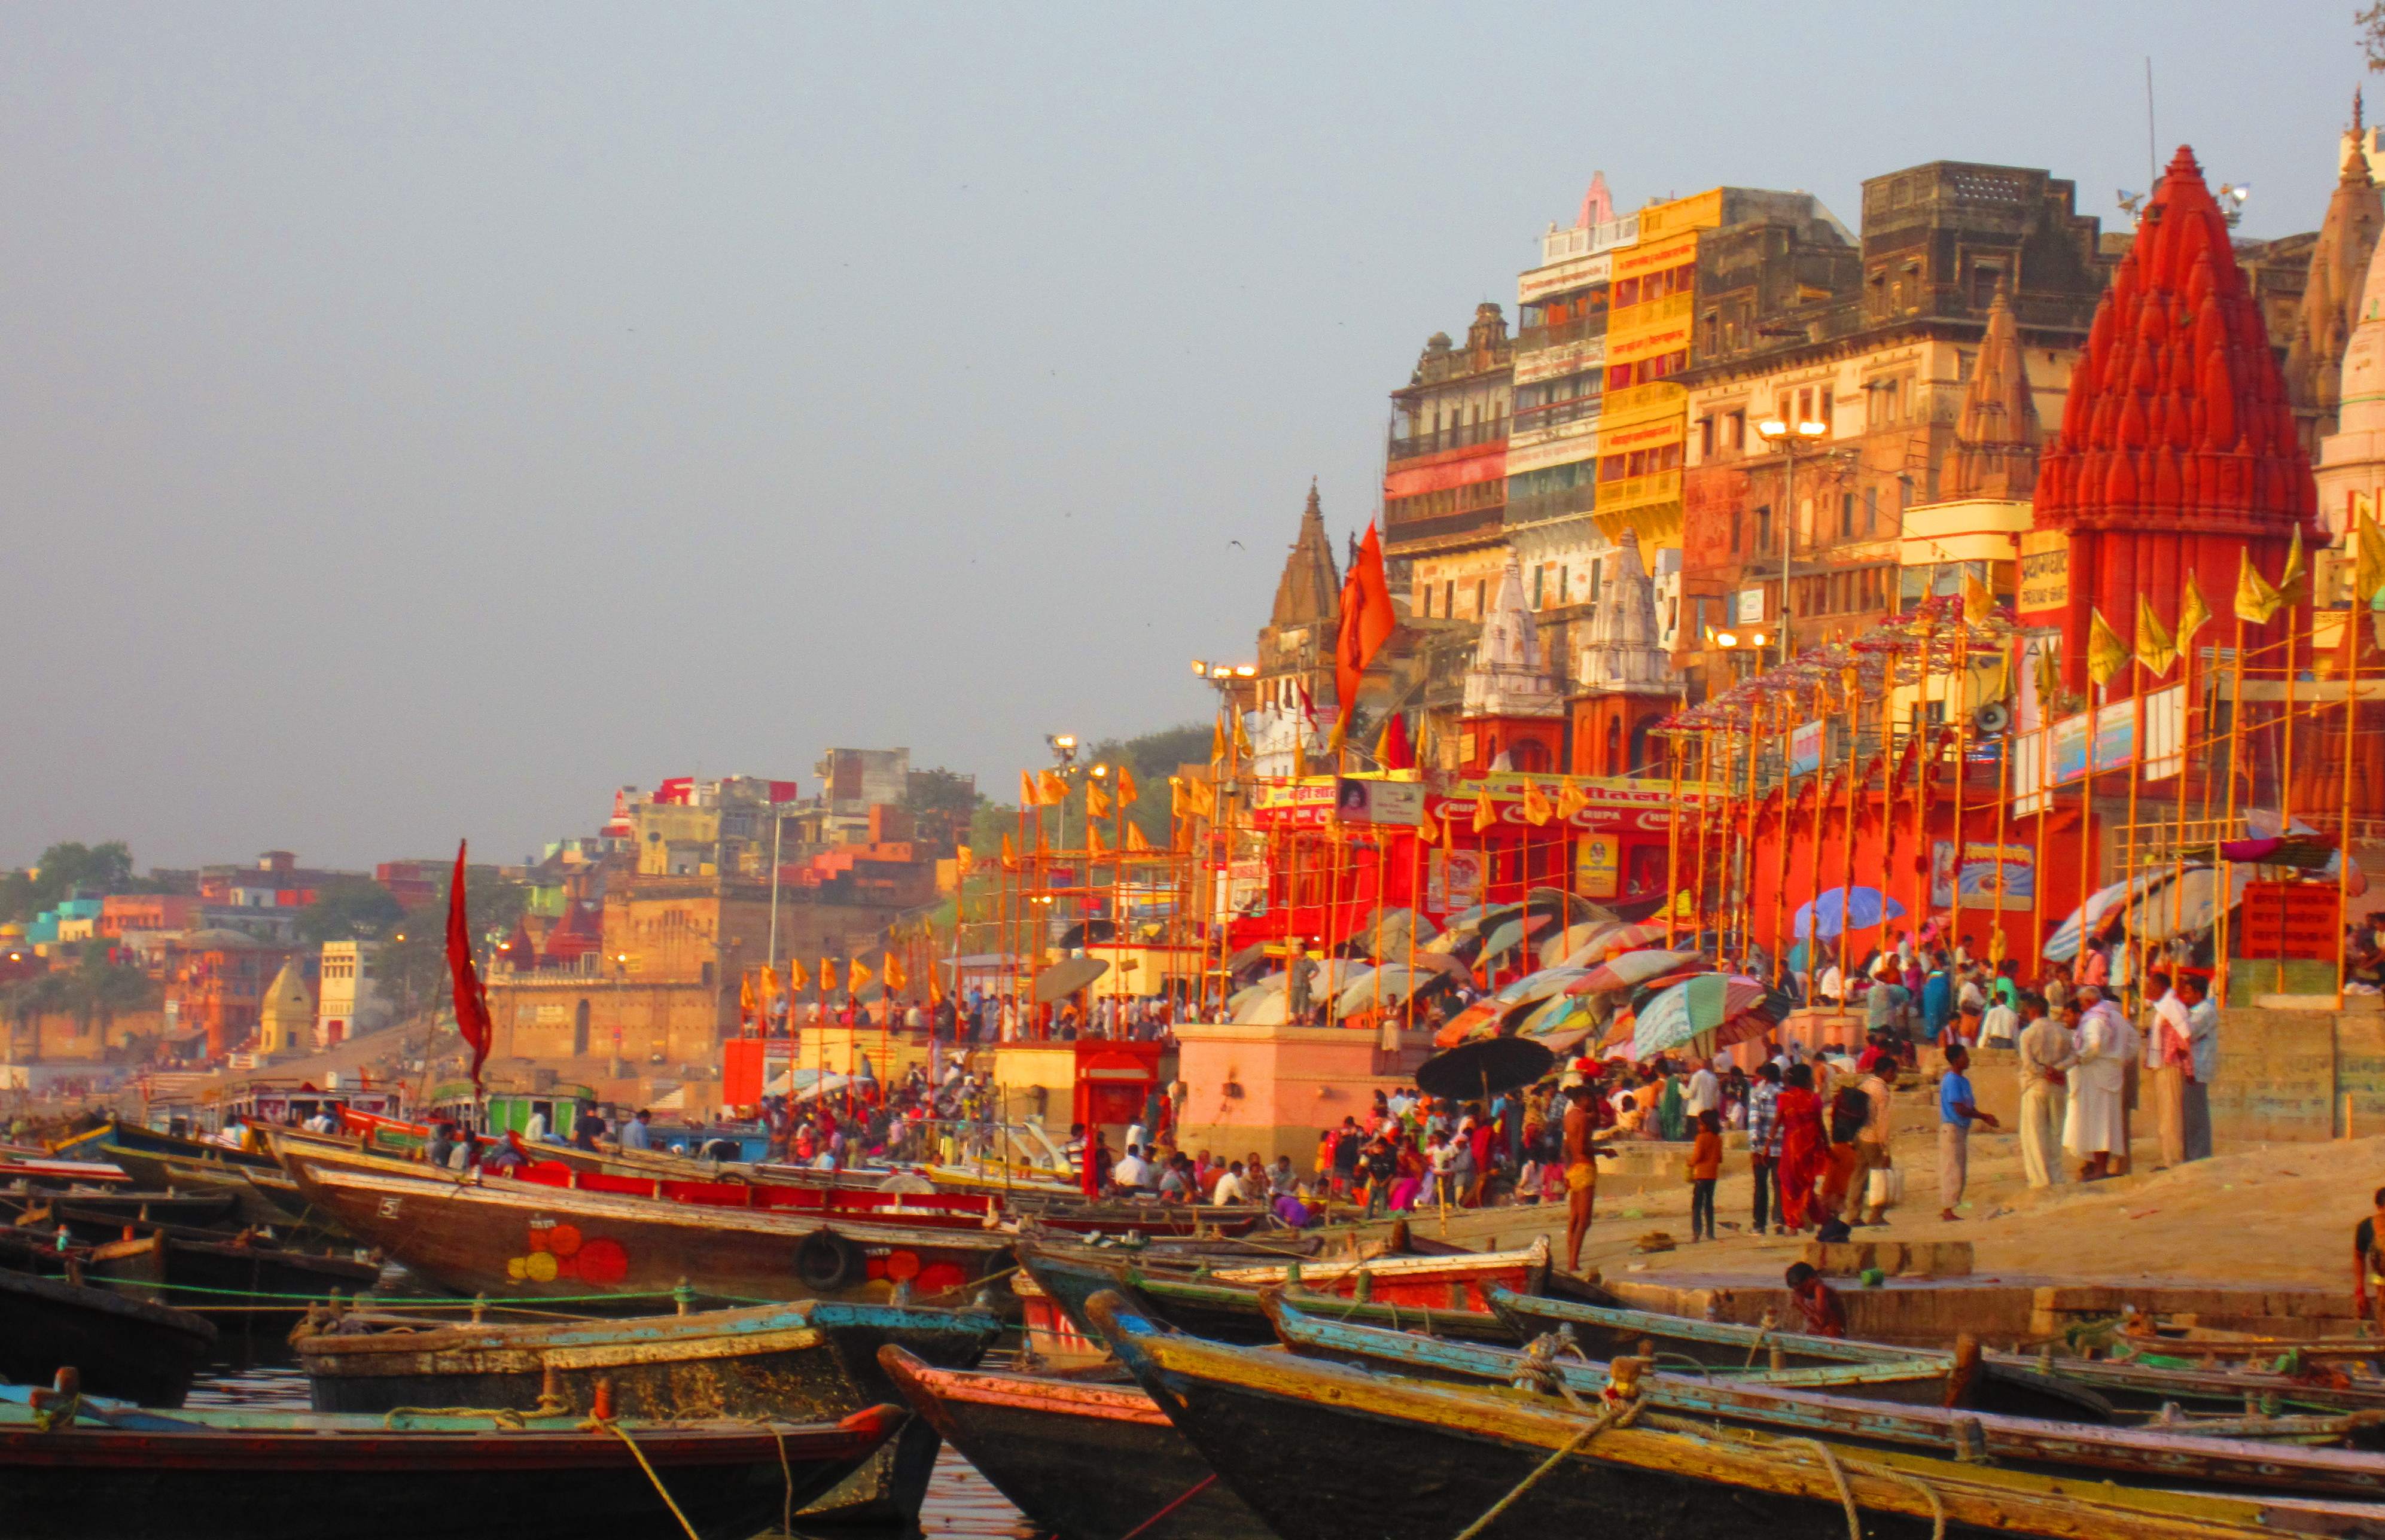 Varanasi Ganga Ghat2 - Dashashwamedh Ghat Varanasi (#1363401) - HD Wallpaper & Backgrounds Download